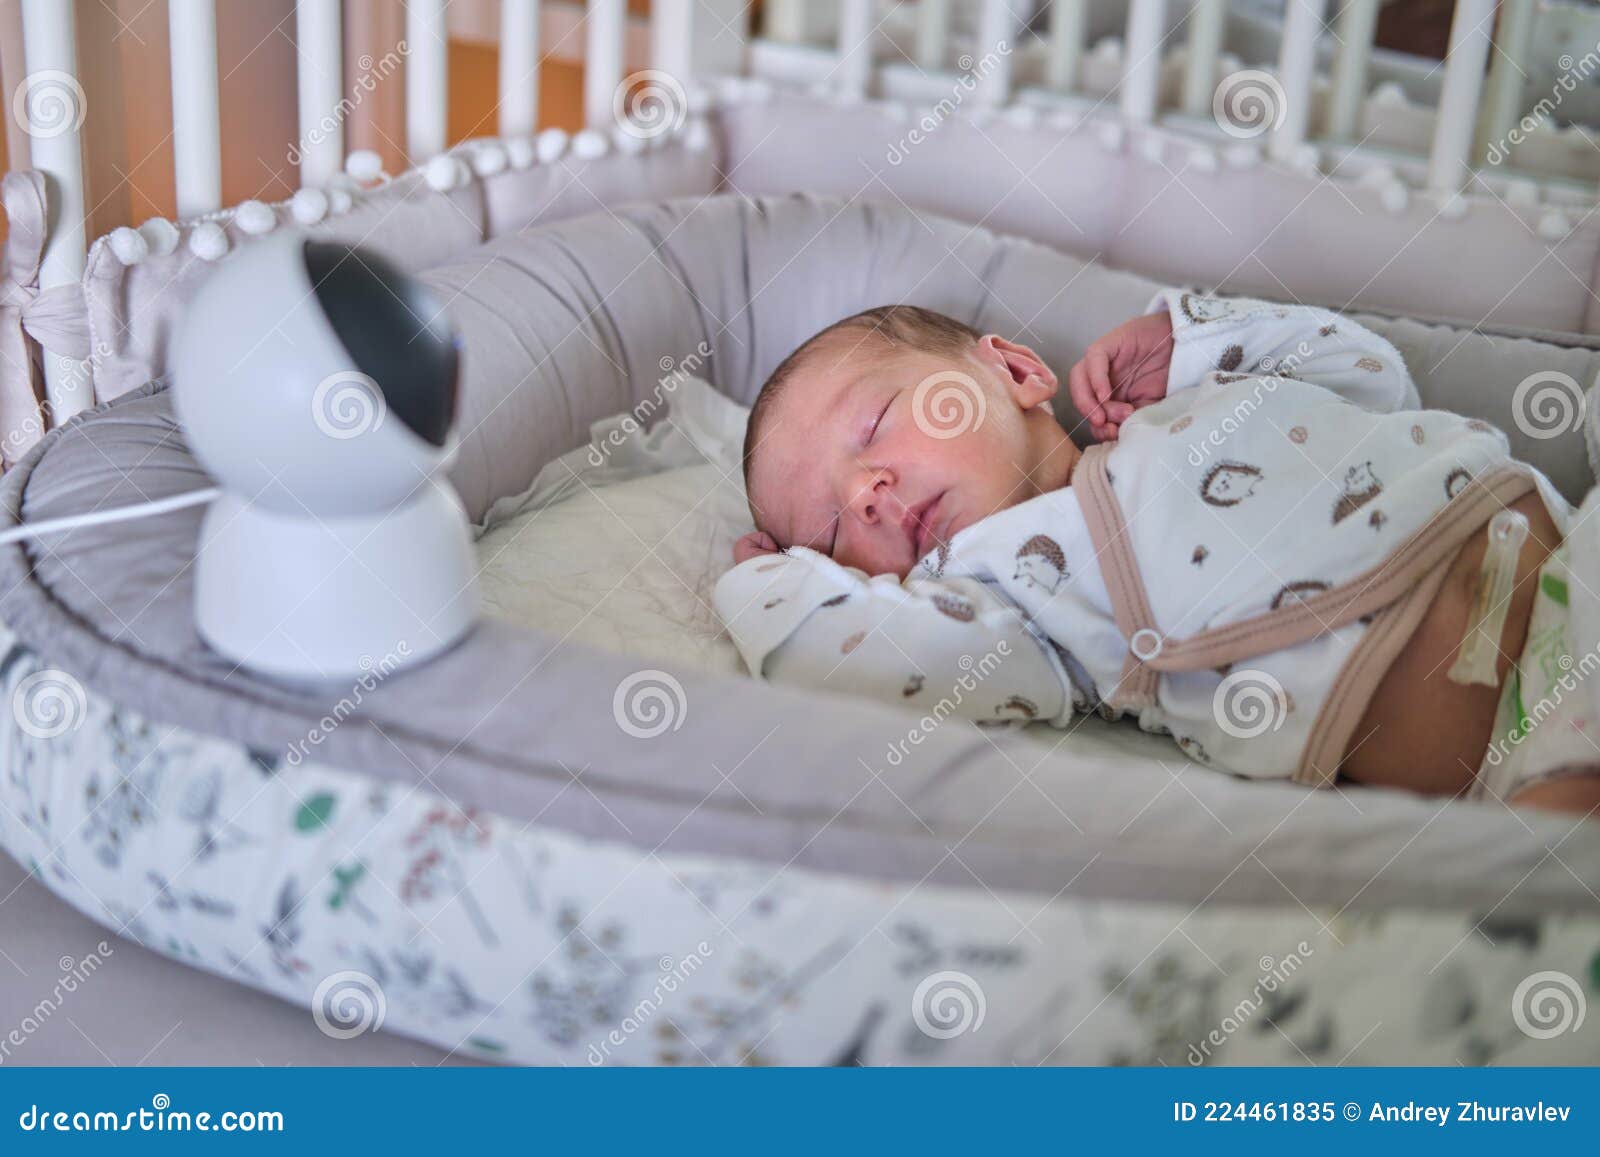 Una Cámara De Vigilancia En El Hogar Mira a La Cuna Con Un Bebé Recién  Nacido Que Duerme Imagen de archivo - Imagen de interior, alejado: 224461835